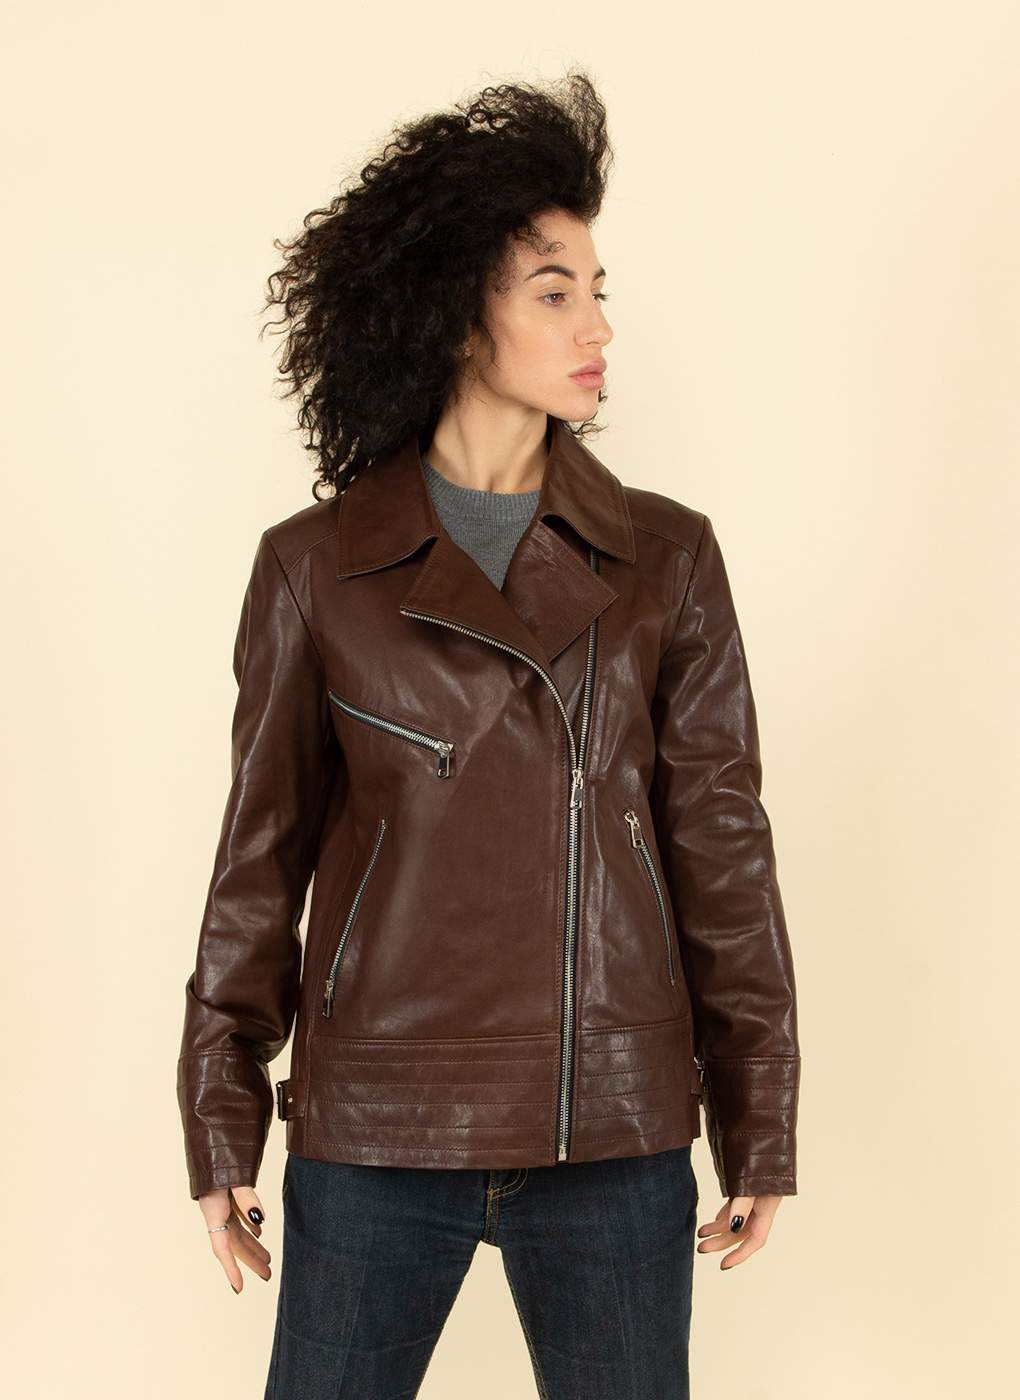 Кожаная куртка женская Каляев 55130 коричневая 50 RU